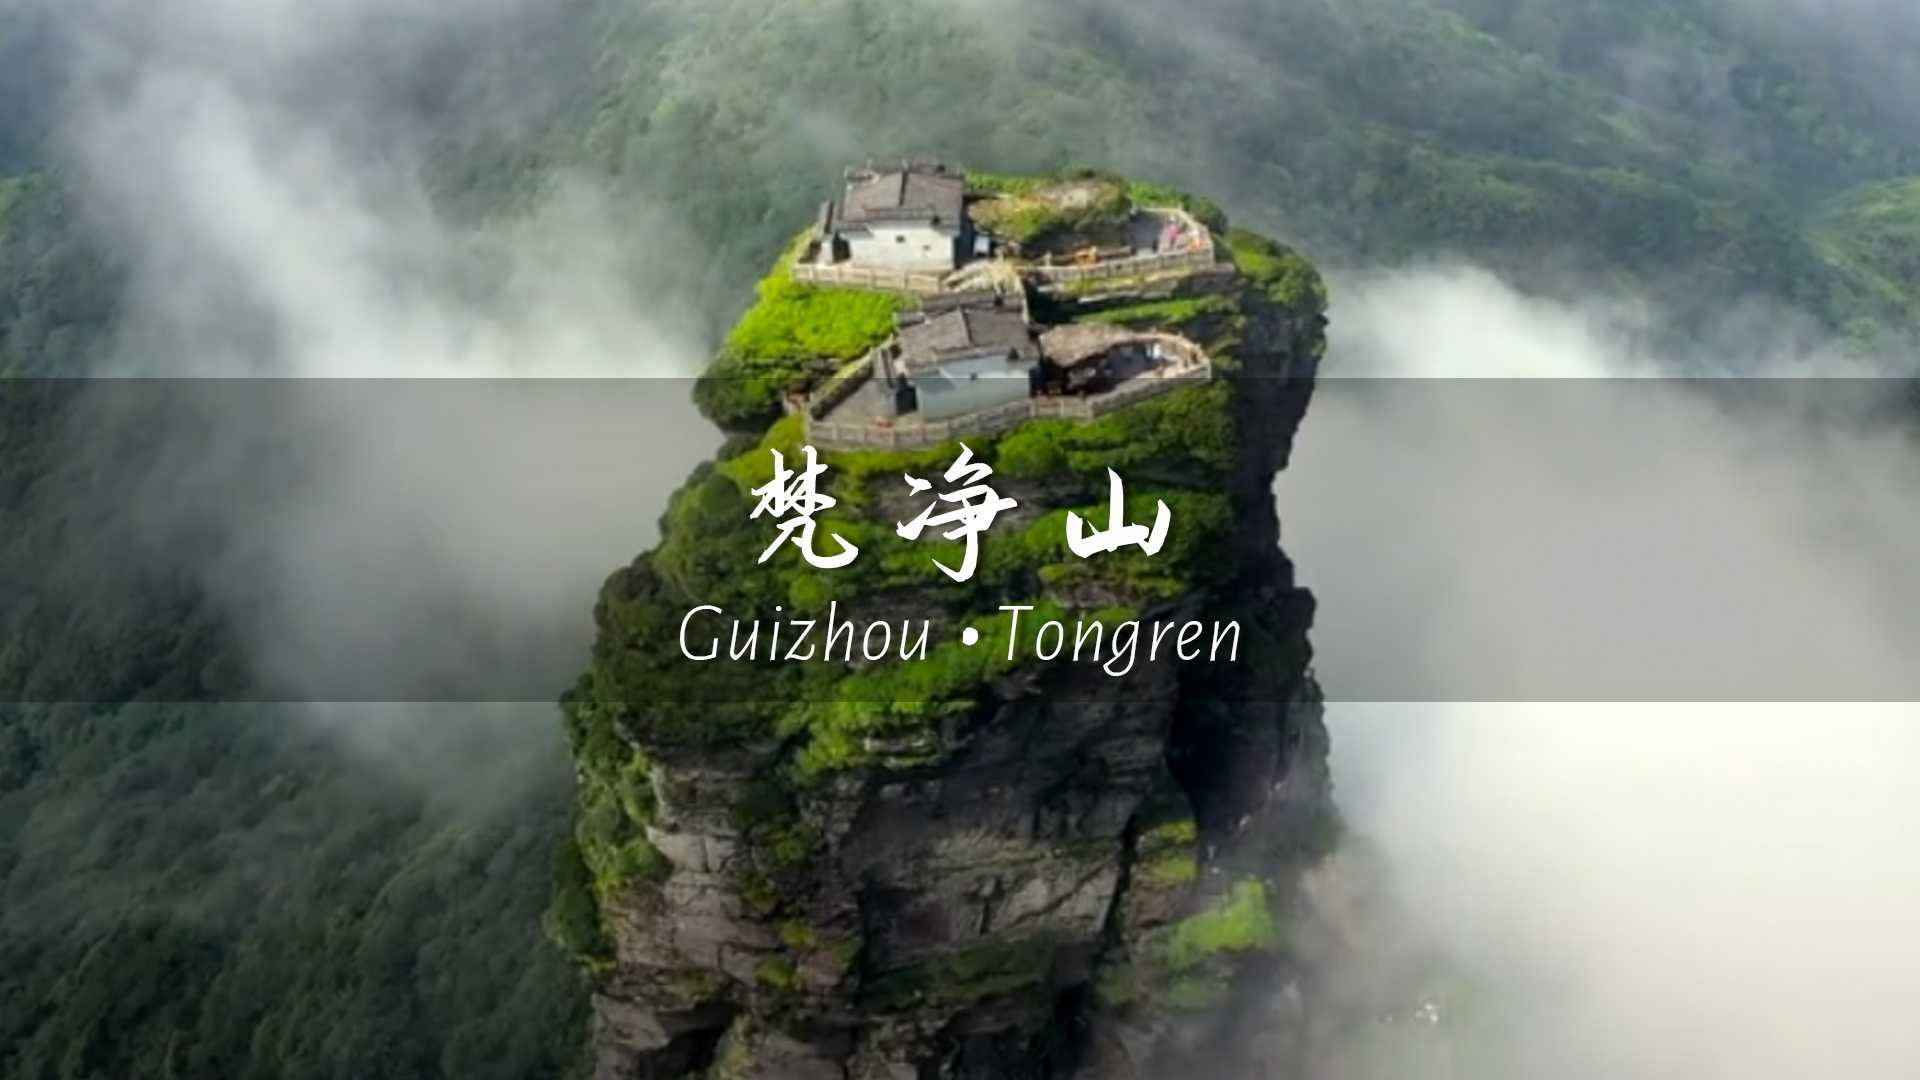 雄伟壮丽的风景，从来都不是旅行的意义~ 旅行vlog之贵州梵净山